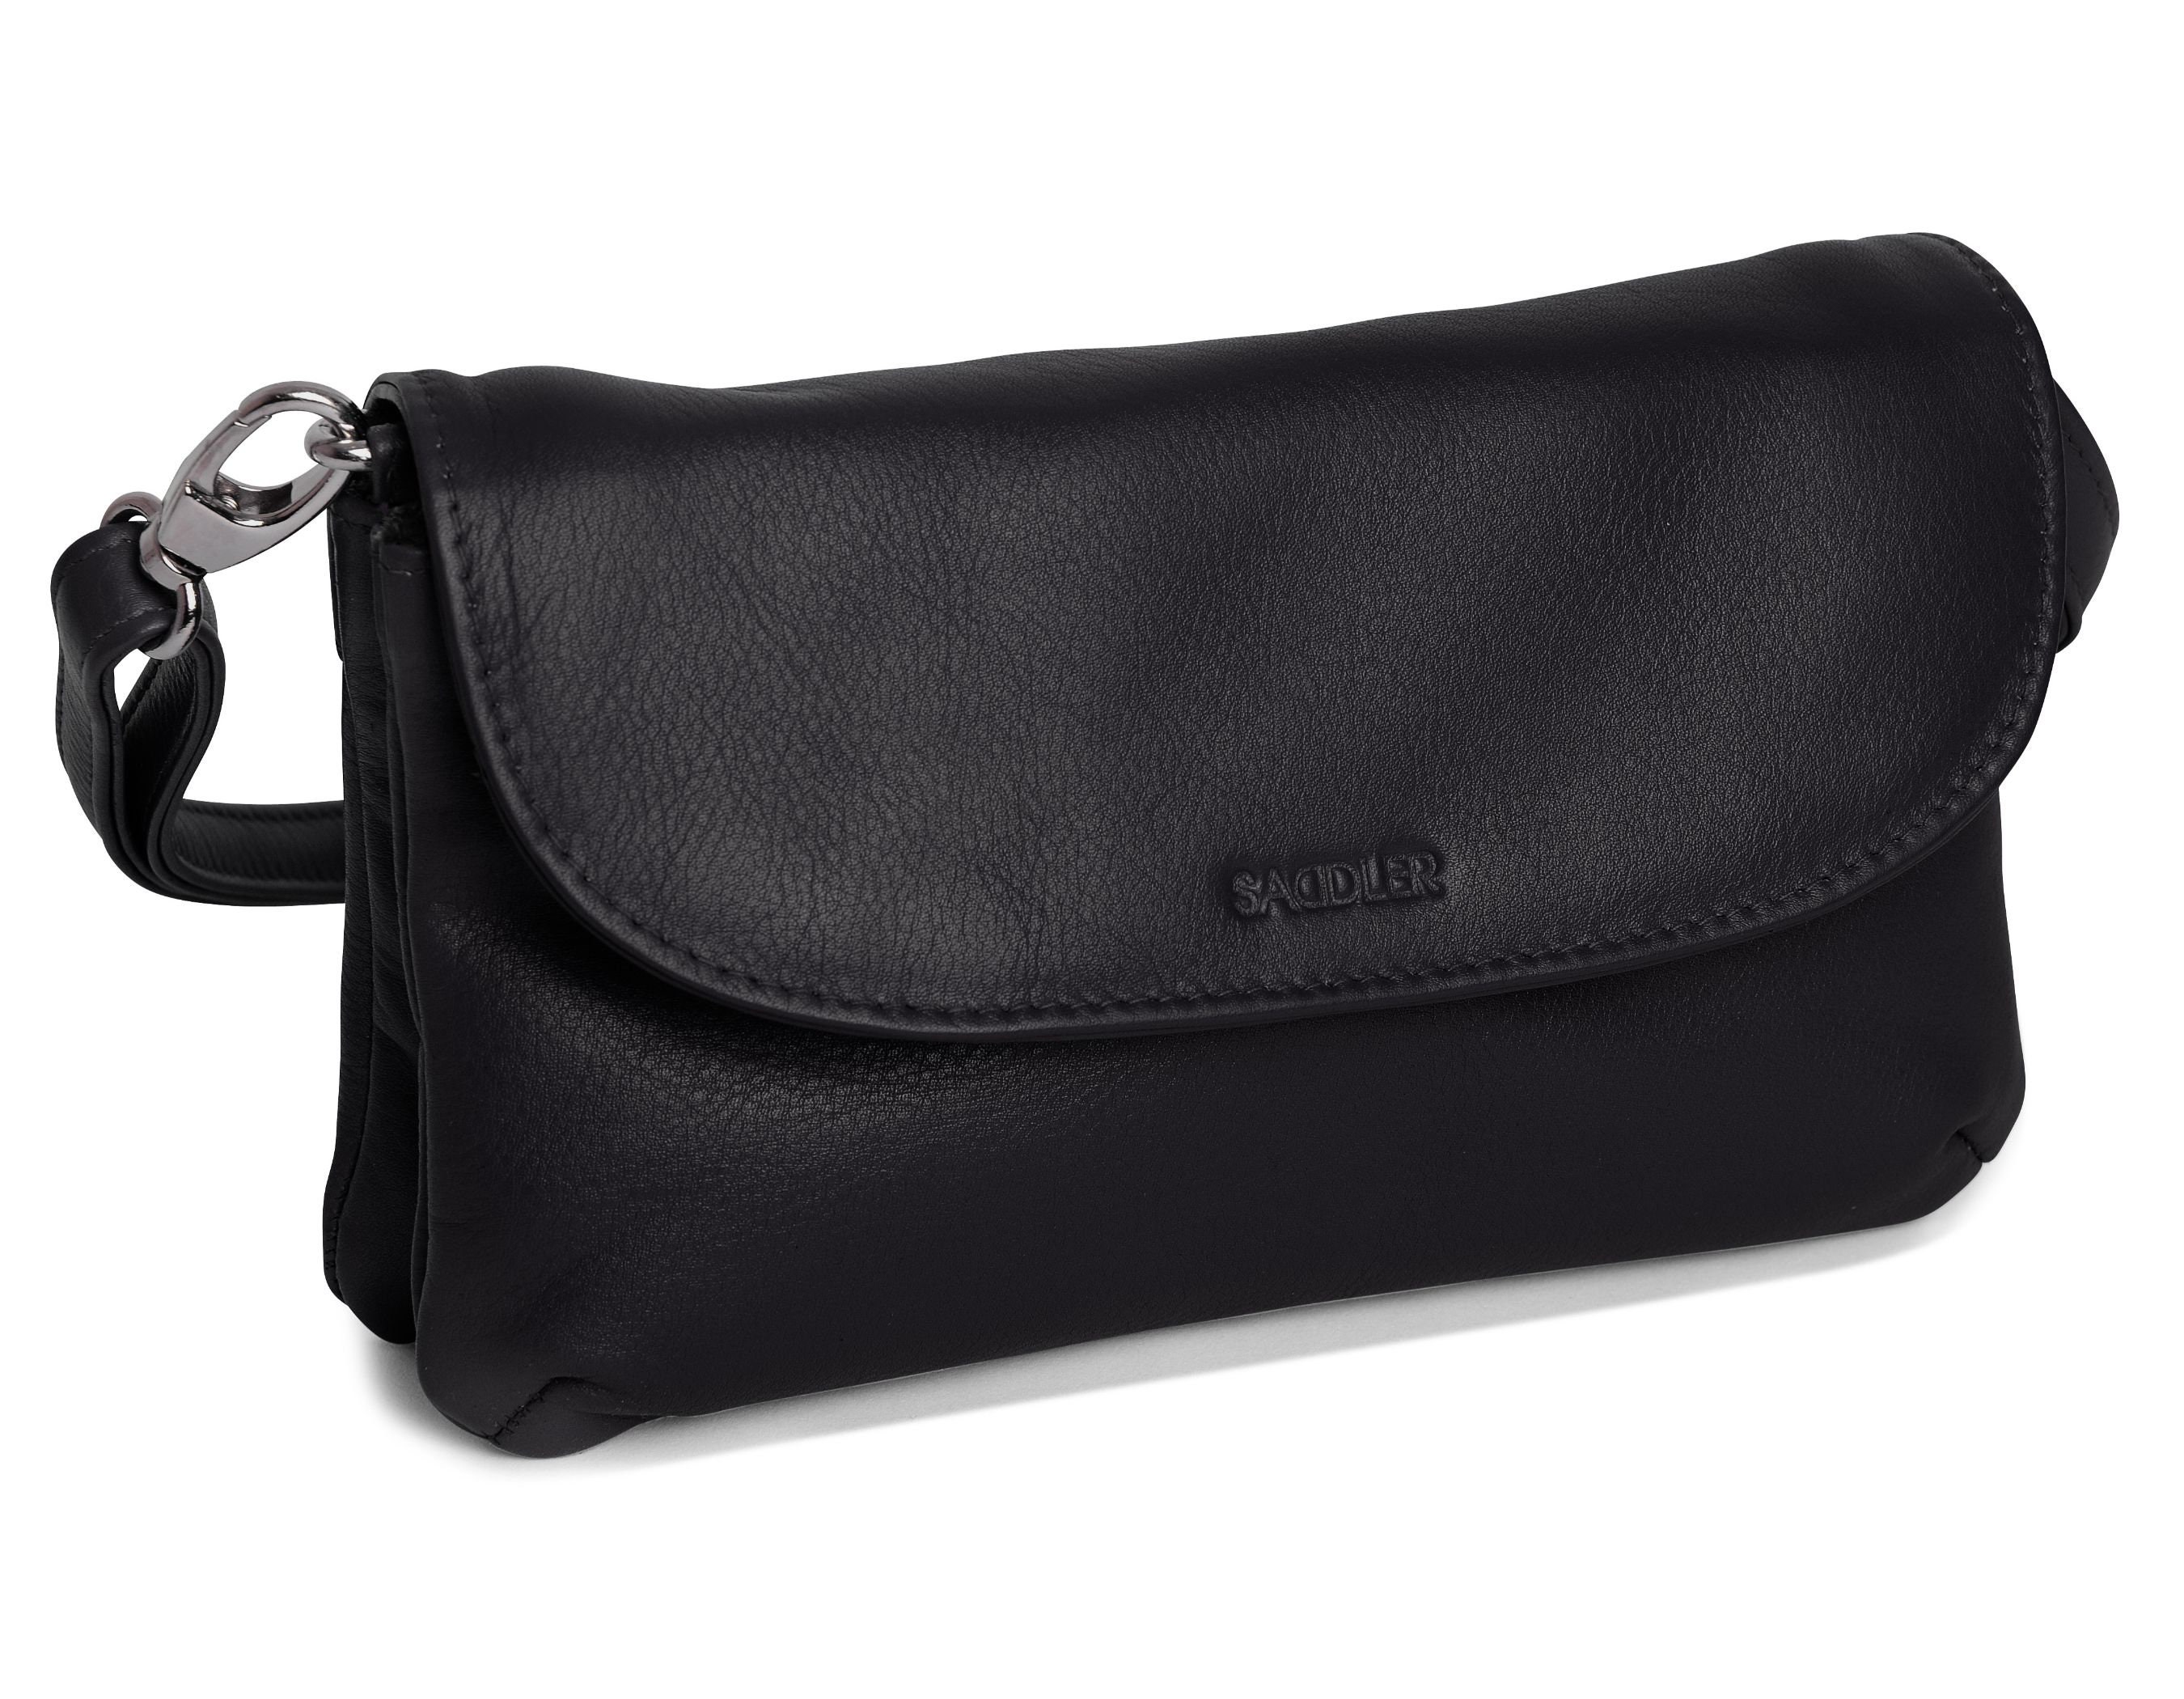 Saddler Luxurious Soft Real Leather Zip Top Handbag Cross Body Adjustable Strap Designer Sling Shoulder Bag For Ladies Gift Boxed Black